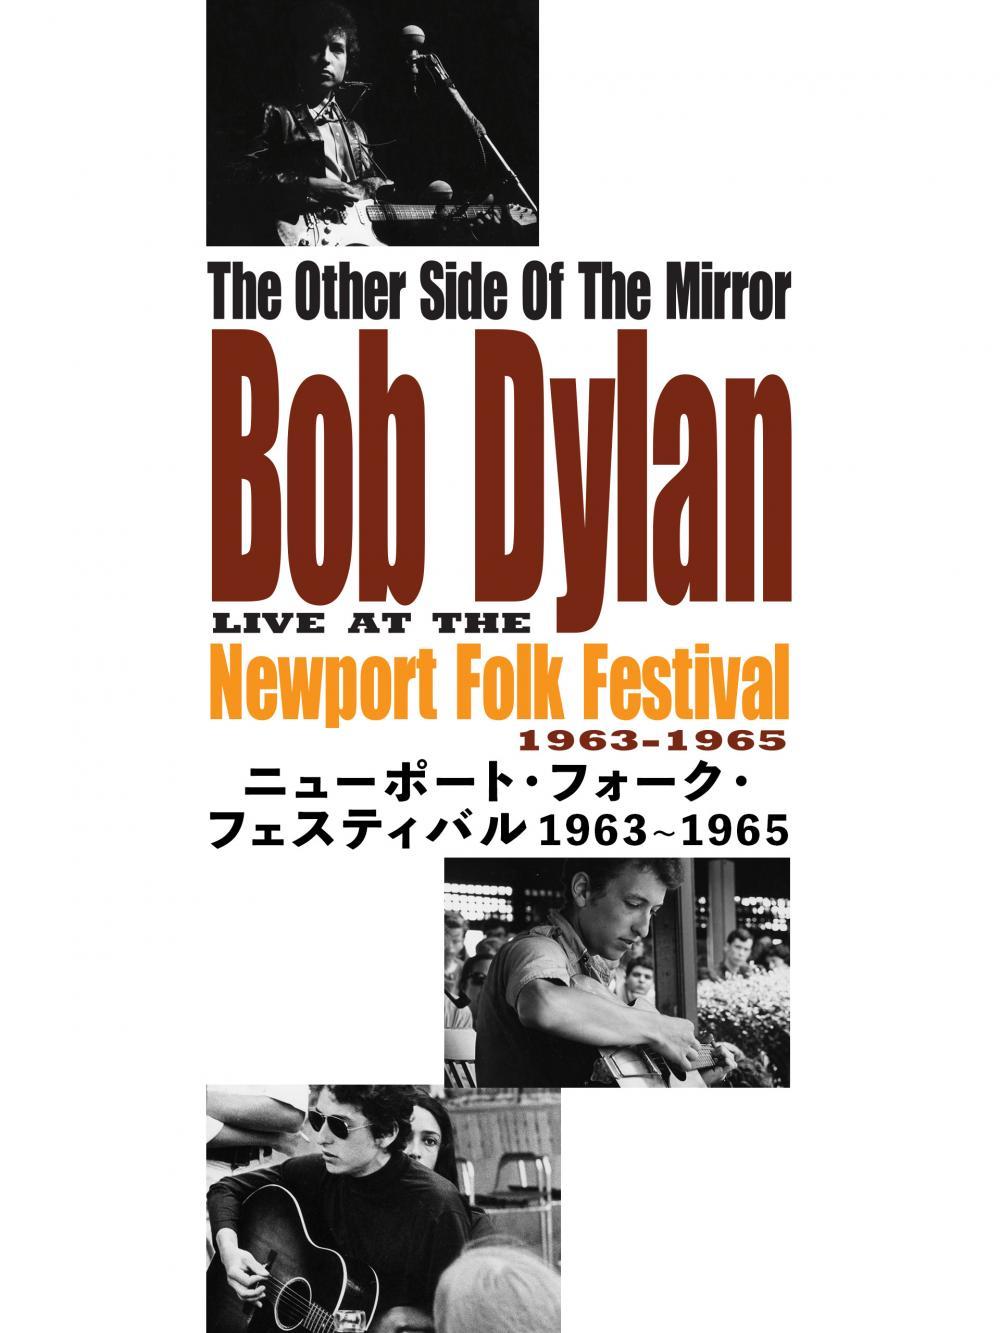 ニューポート・フォーク・フェスティバル 1963~1965